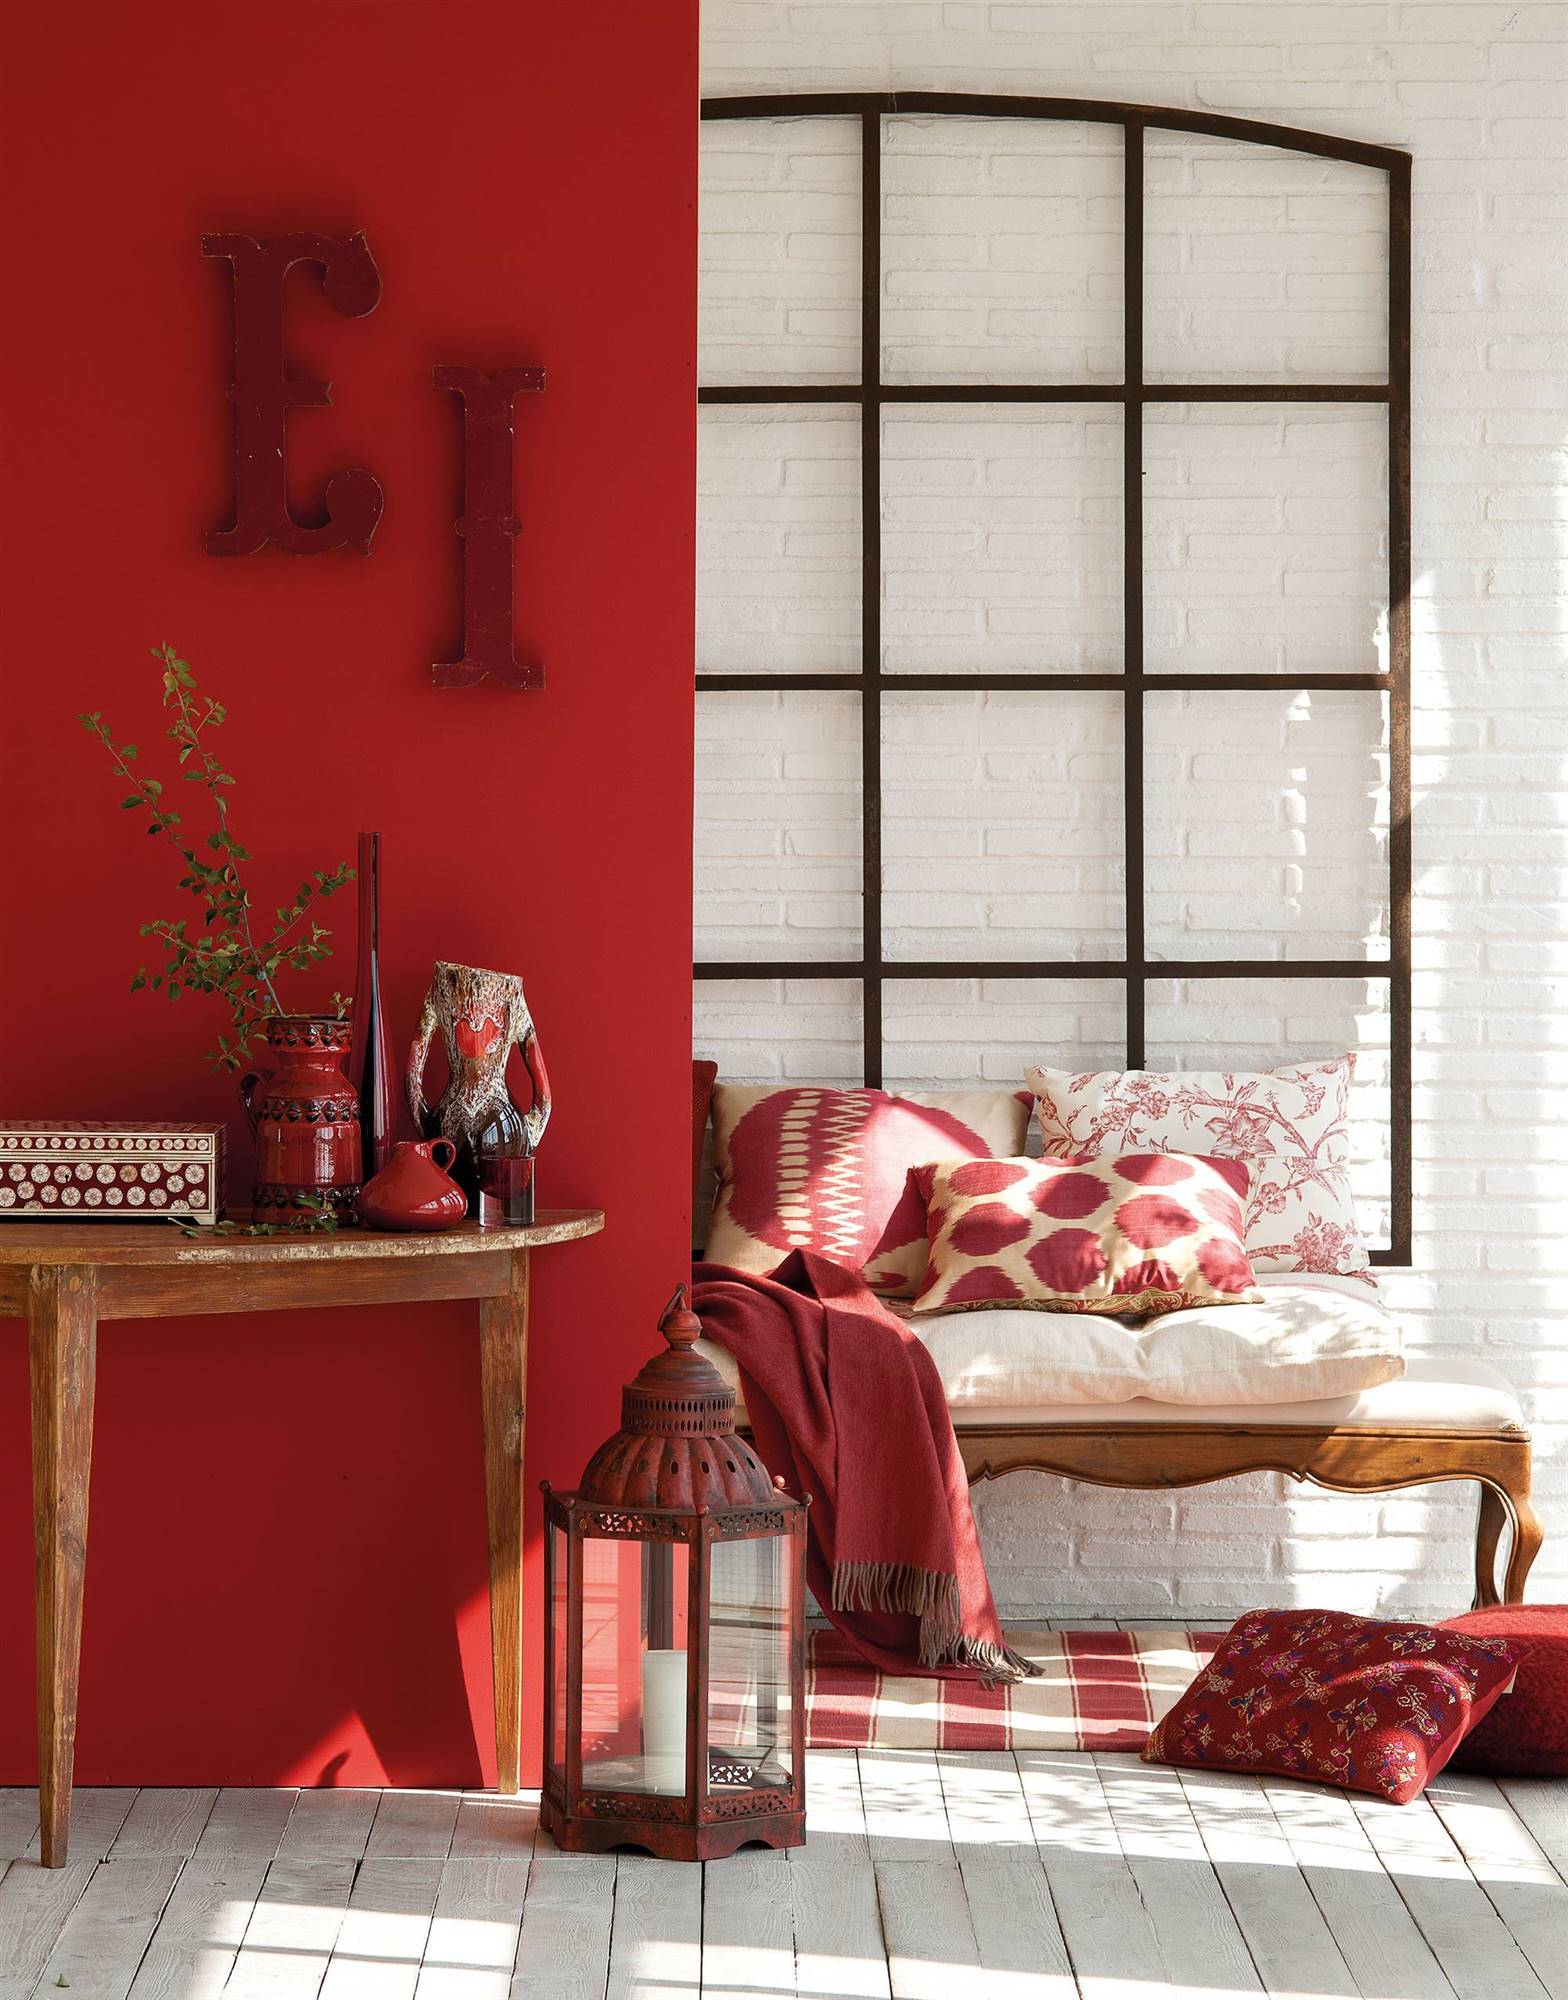 Recibidor con pared pintada en color rojo, consola de madera y banco de estilo clásico de madera 00353811